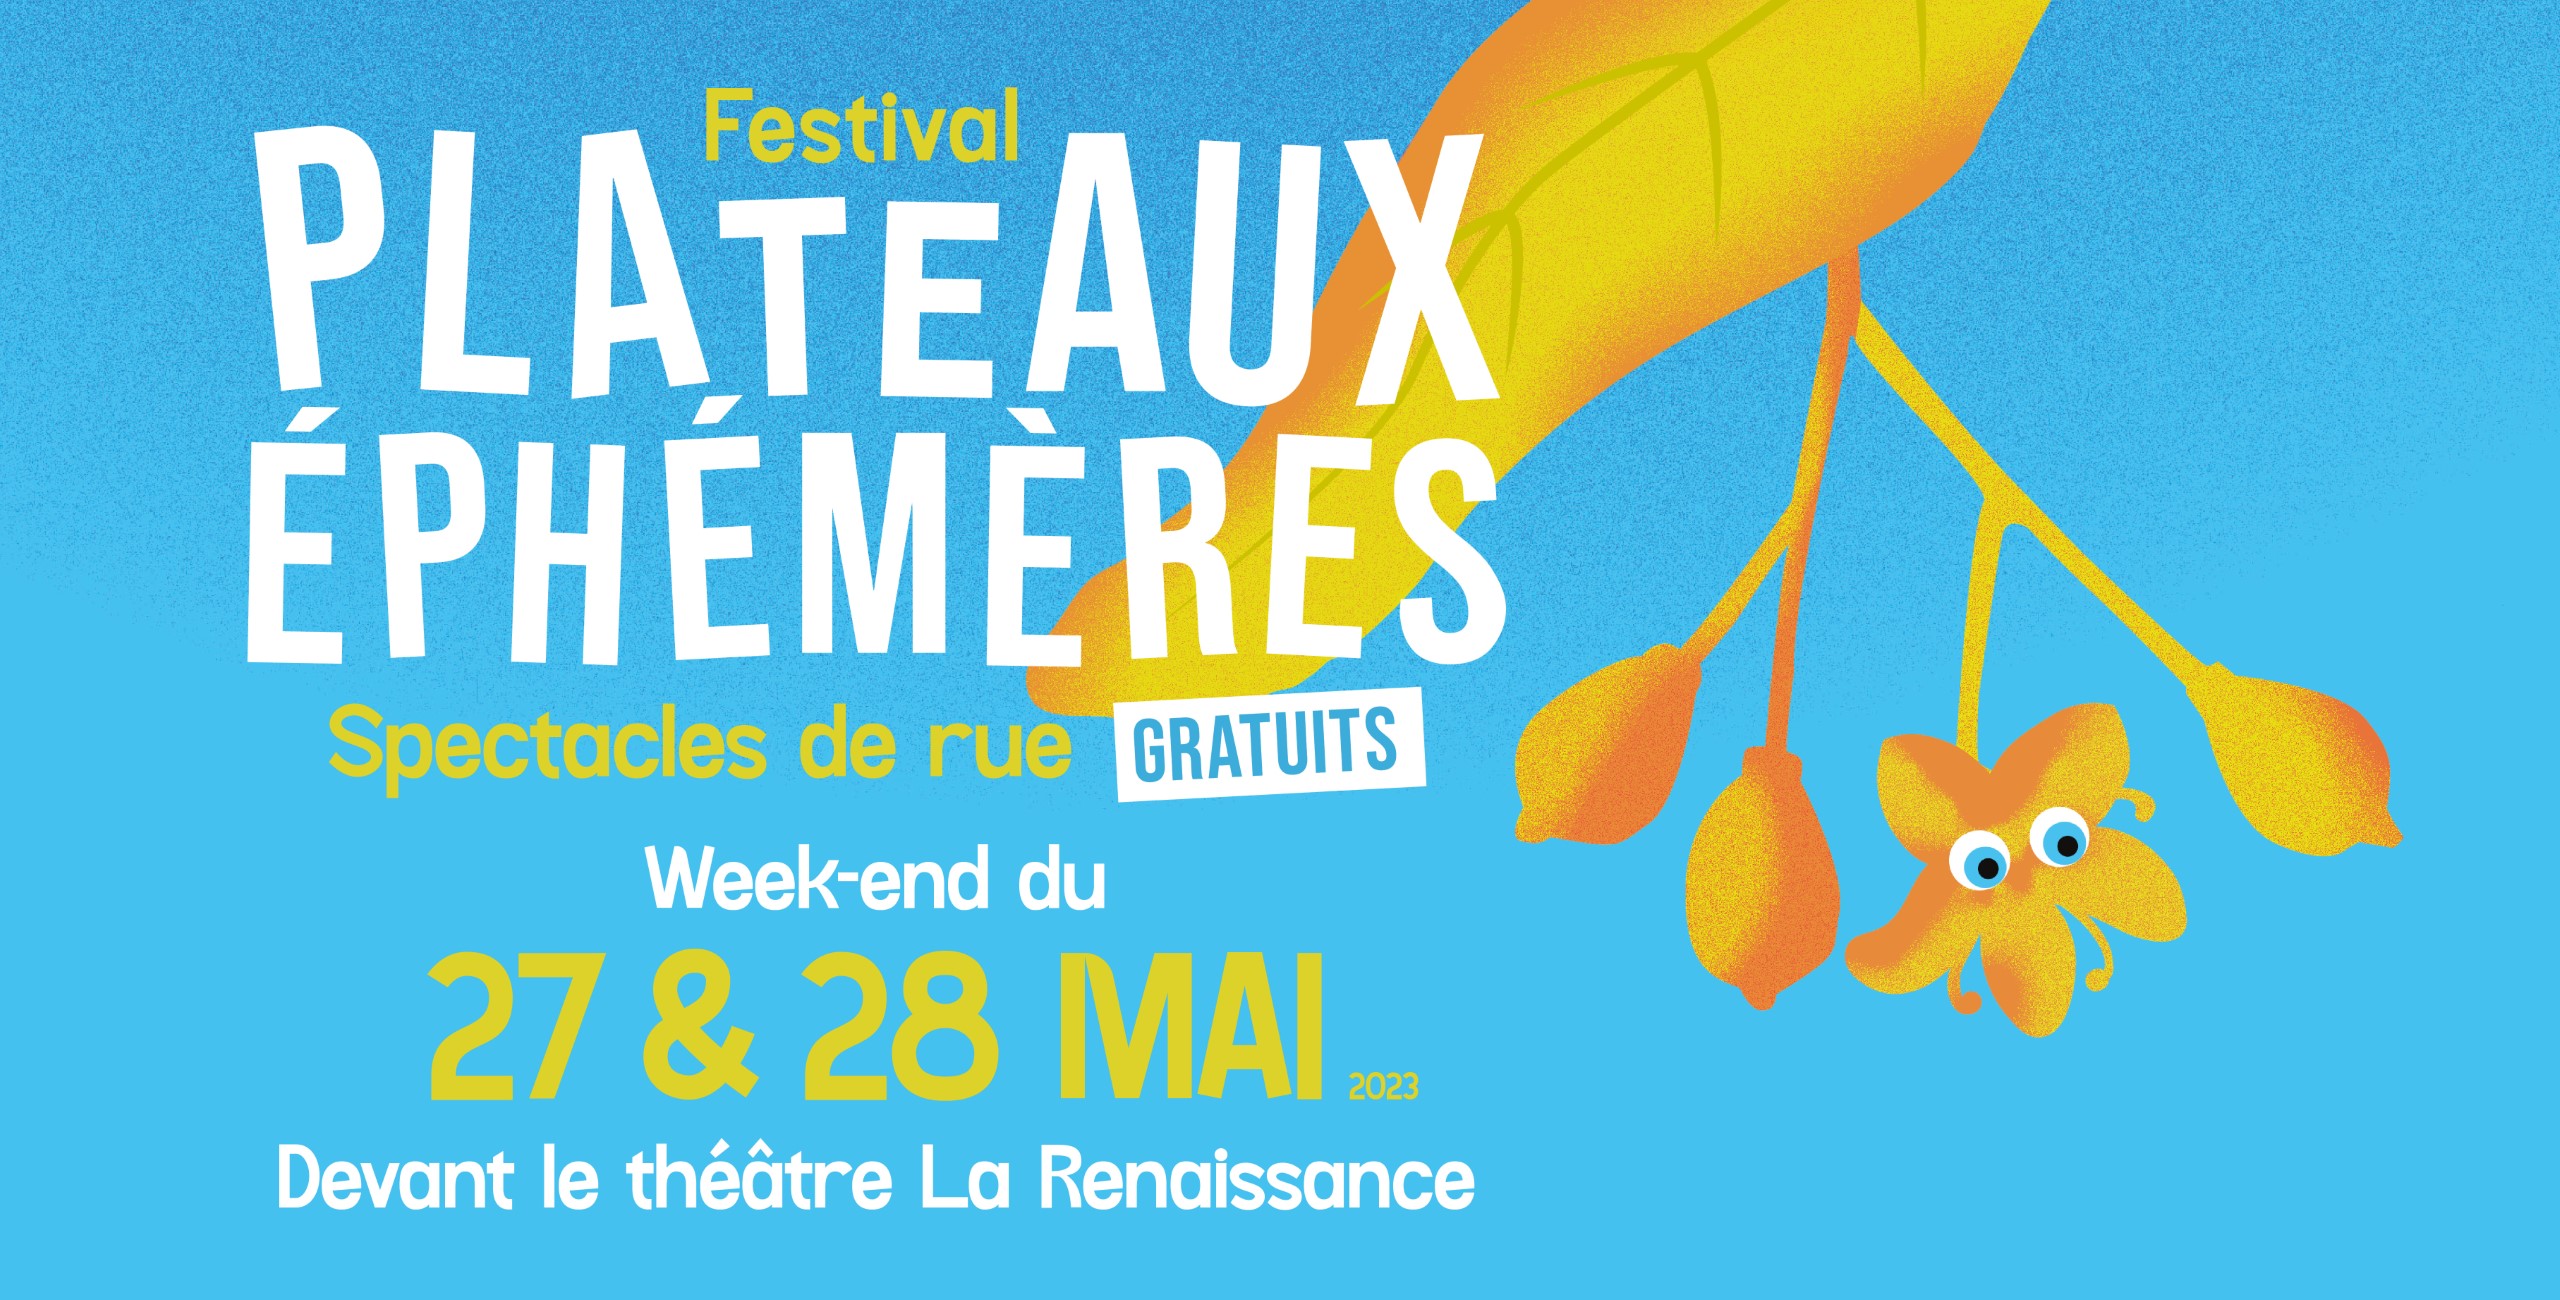 Festival Plateaux Éphémères 2023 - La Renaissance Mondeville